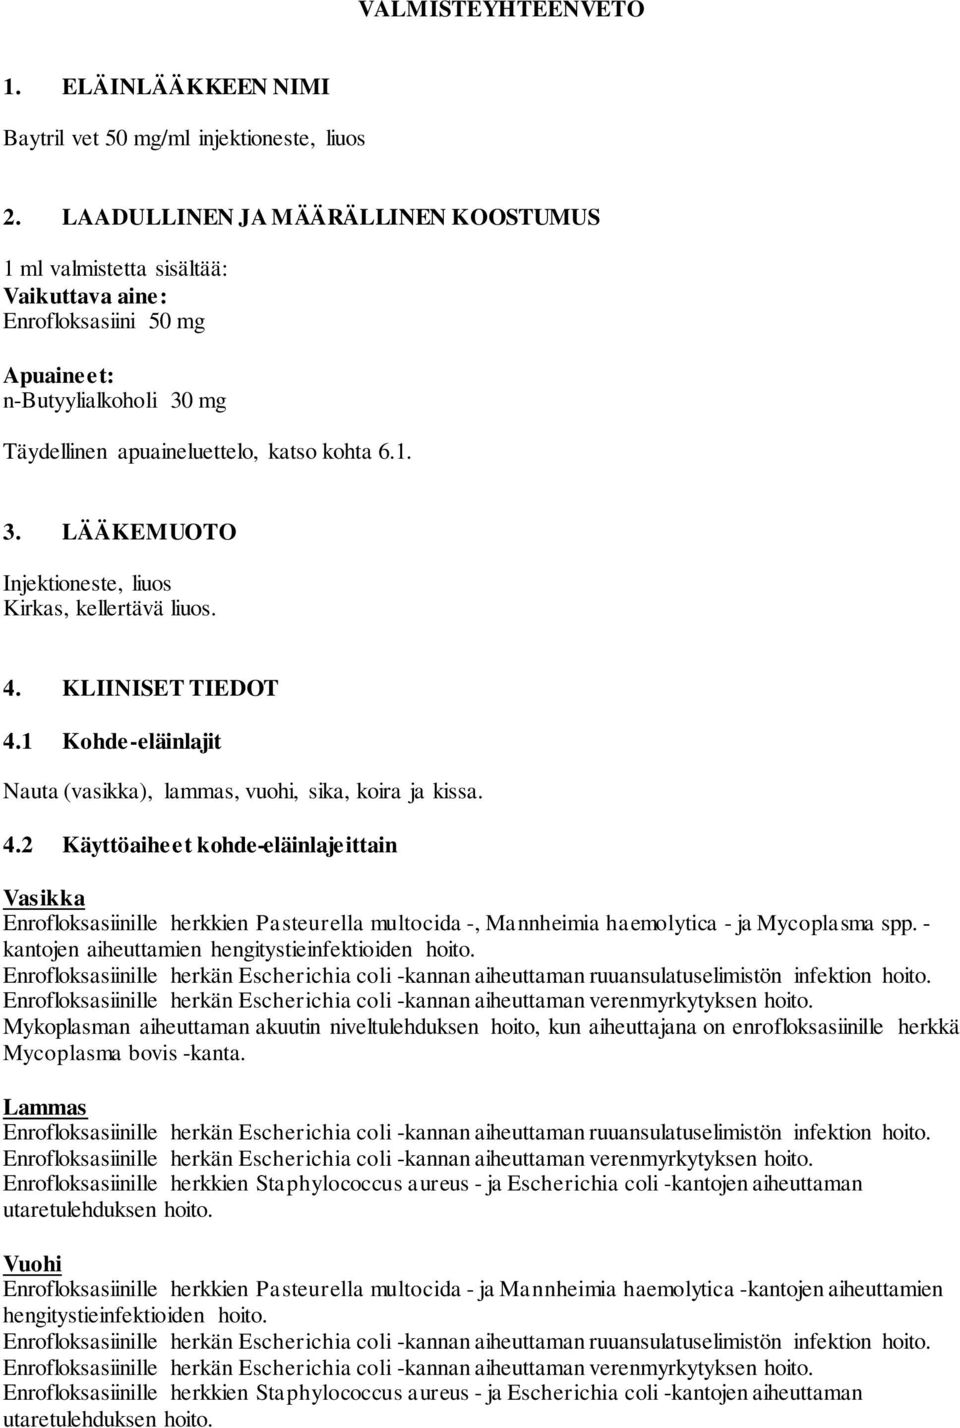 4. KLIINISET TIEDOT 4.1 Kohde-eläinlajit Nauta (vasikka), lammas, vuohi, sika, koira ja kissa. 4.2 Käyttöaiheet kohde-eläinlajeittain Vasikka Enrofloksasiinille herkkien Pasteurella multocida -, Mannheimia haemolytica - ja Mycoplasma spp.